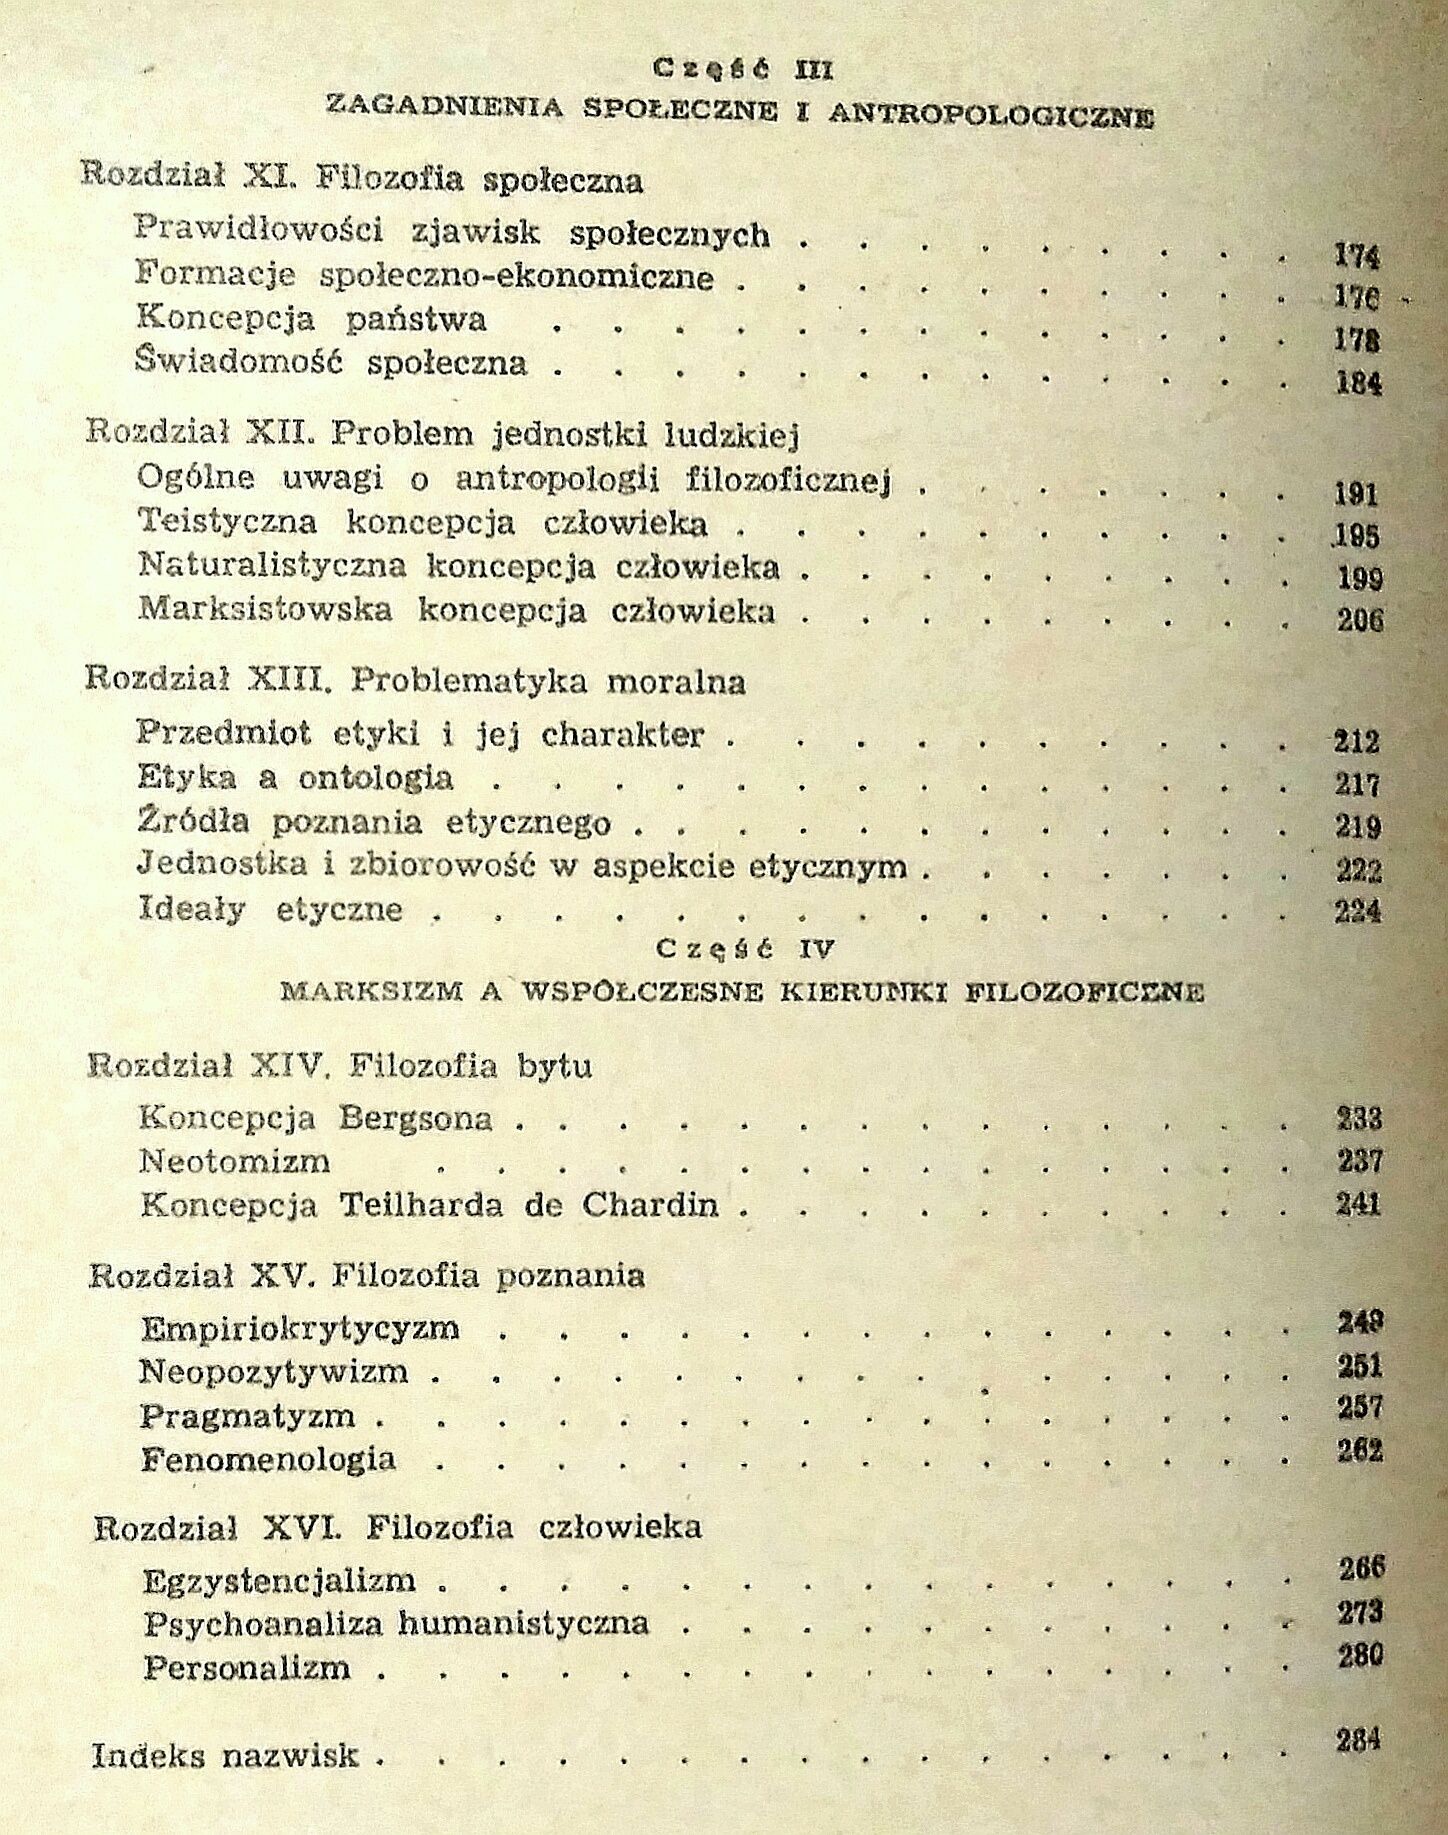 Wprowadzenie do filozofii, Kasprzyk, Węgrzecki, PWN 1983r.